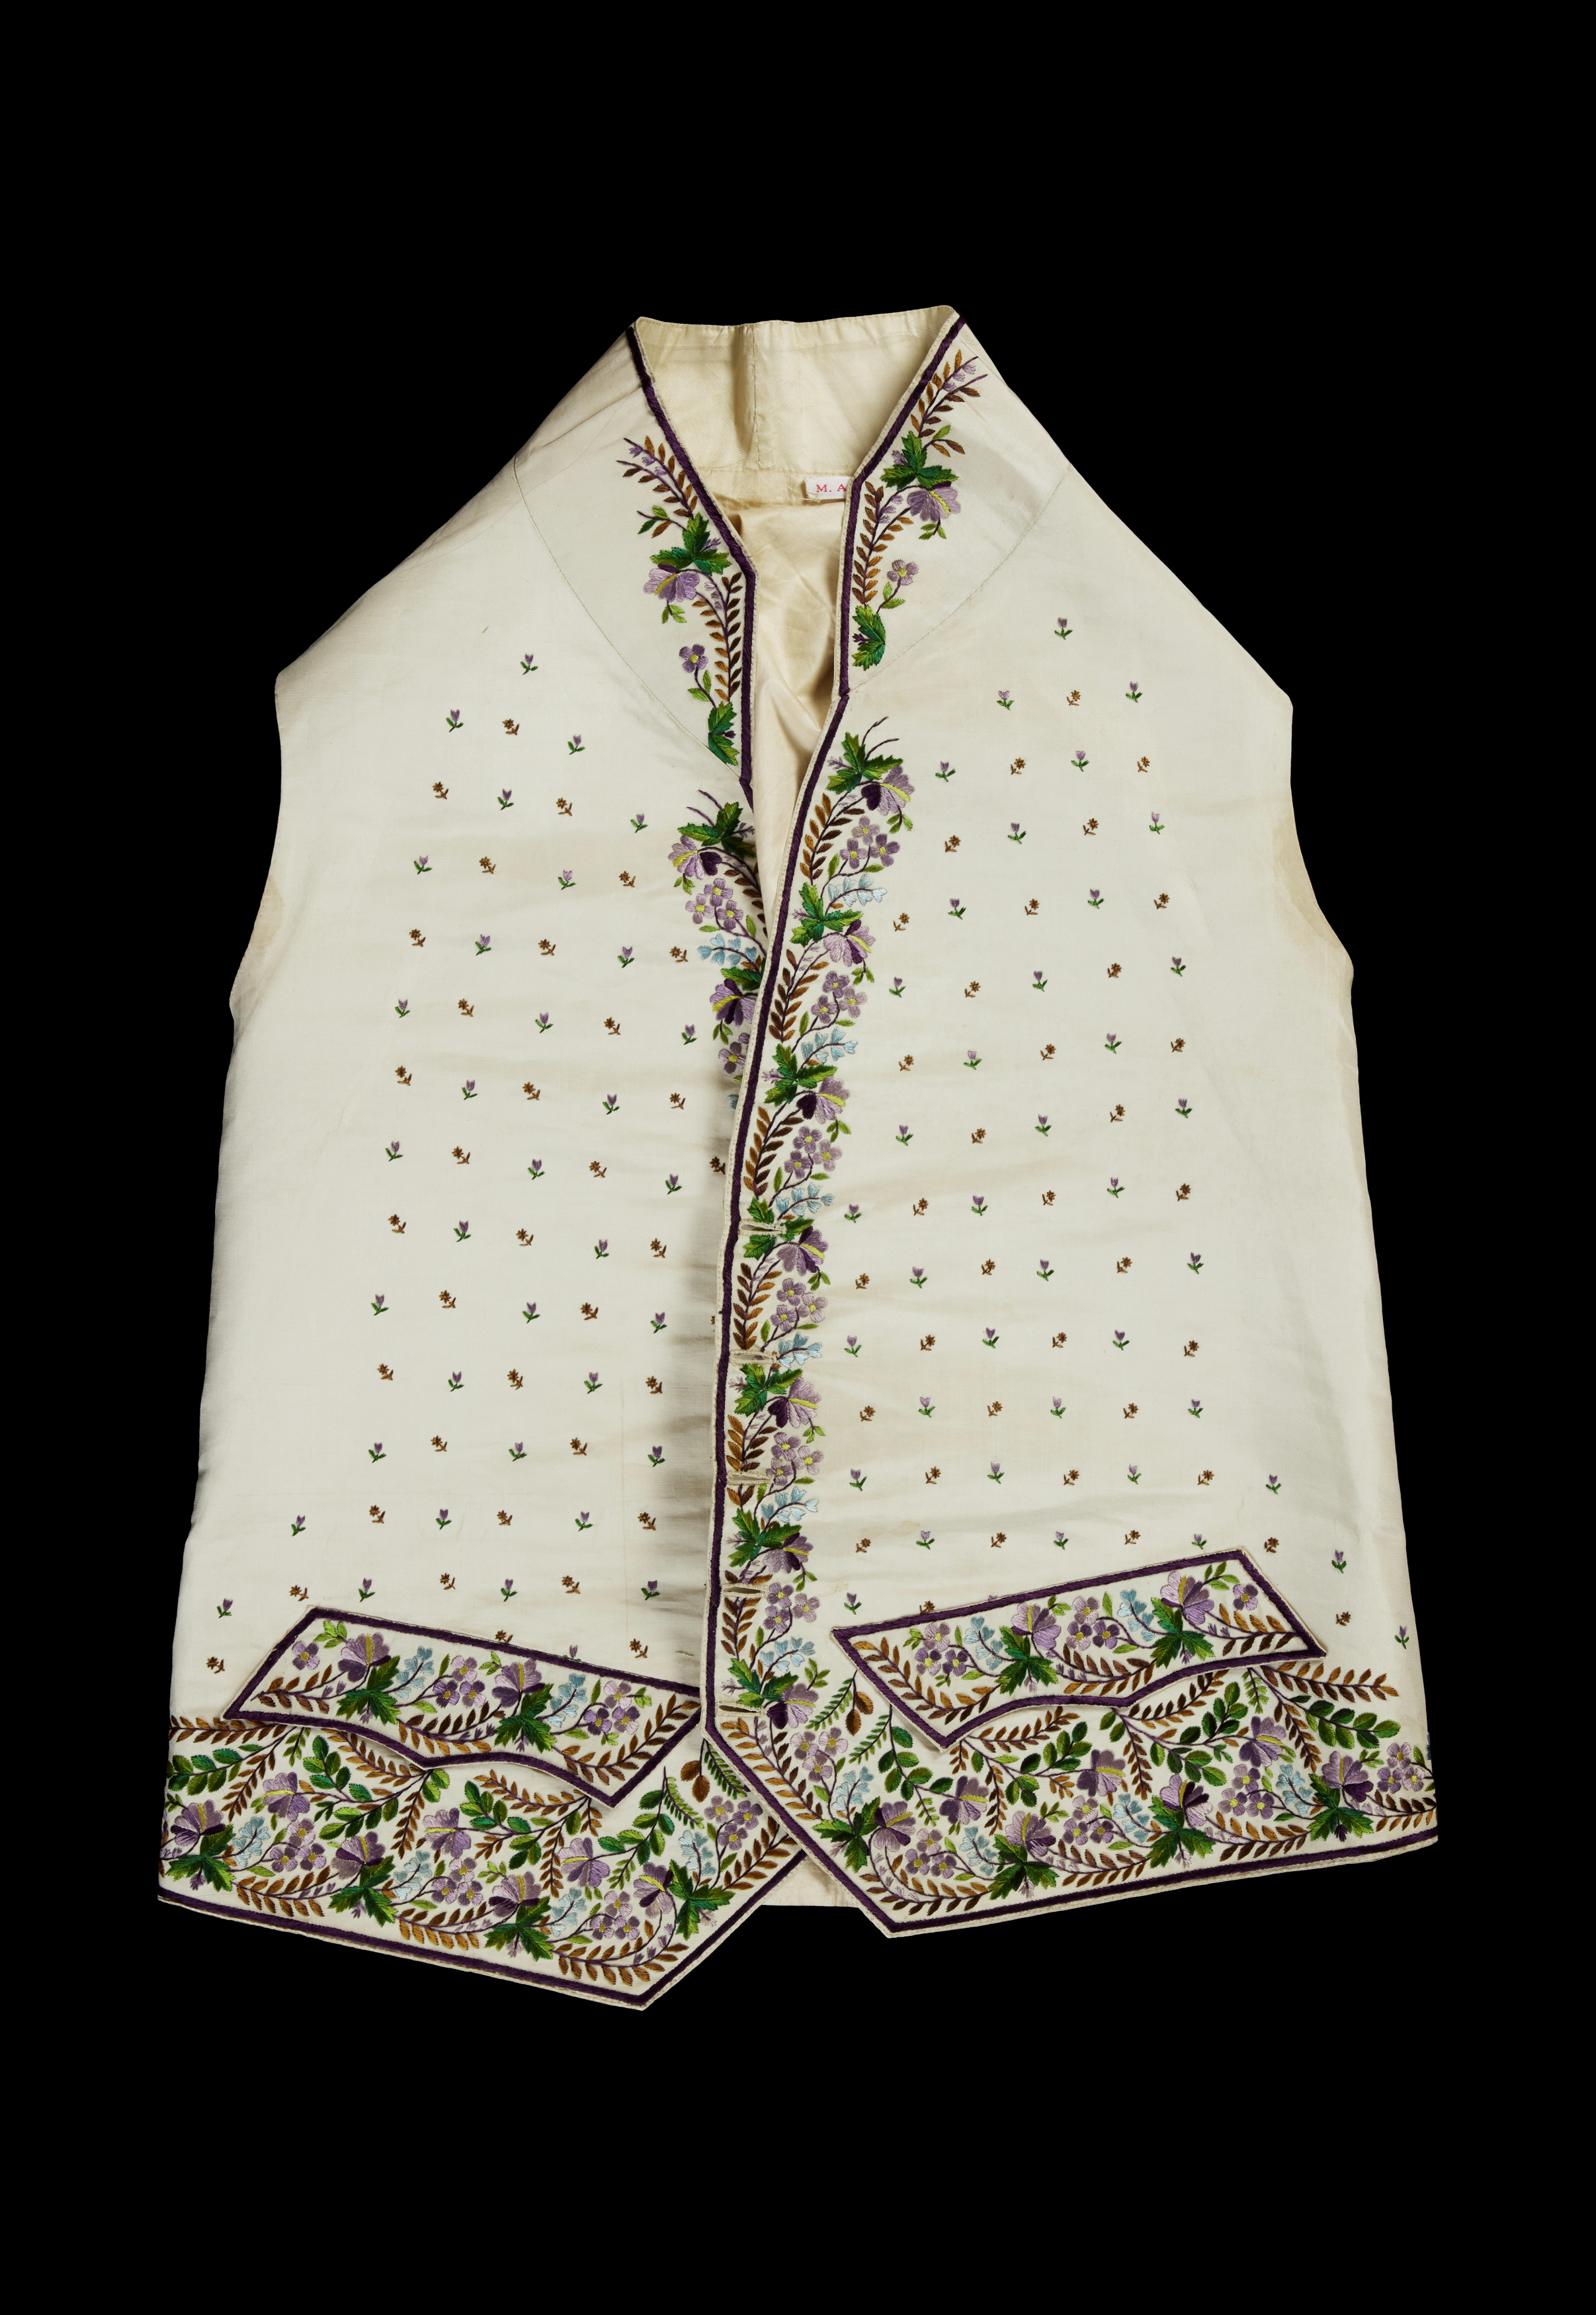 18th century waistcoat from England